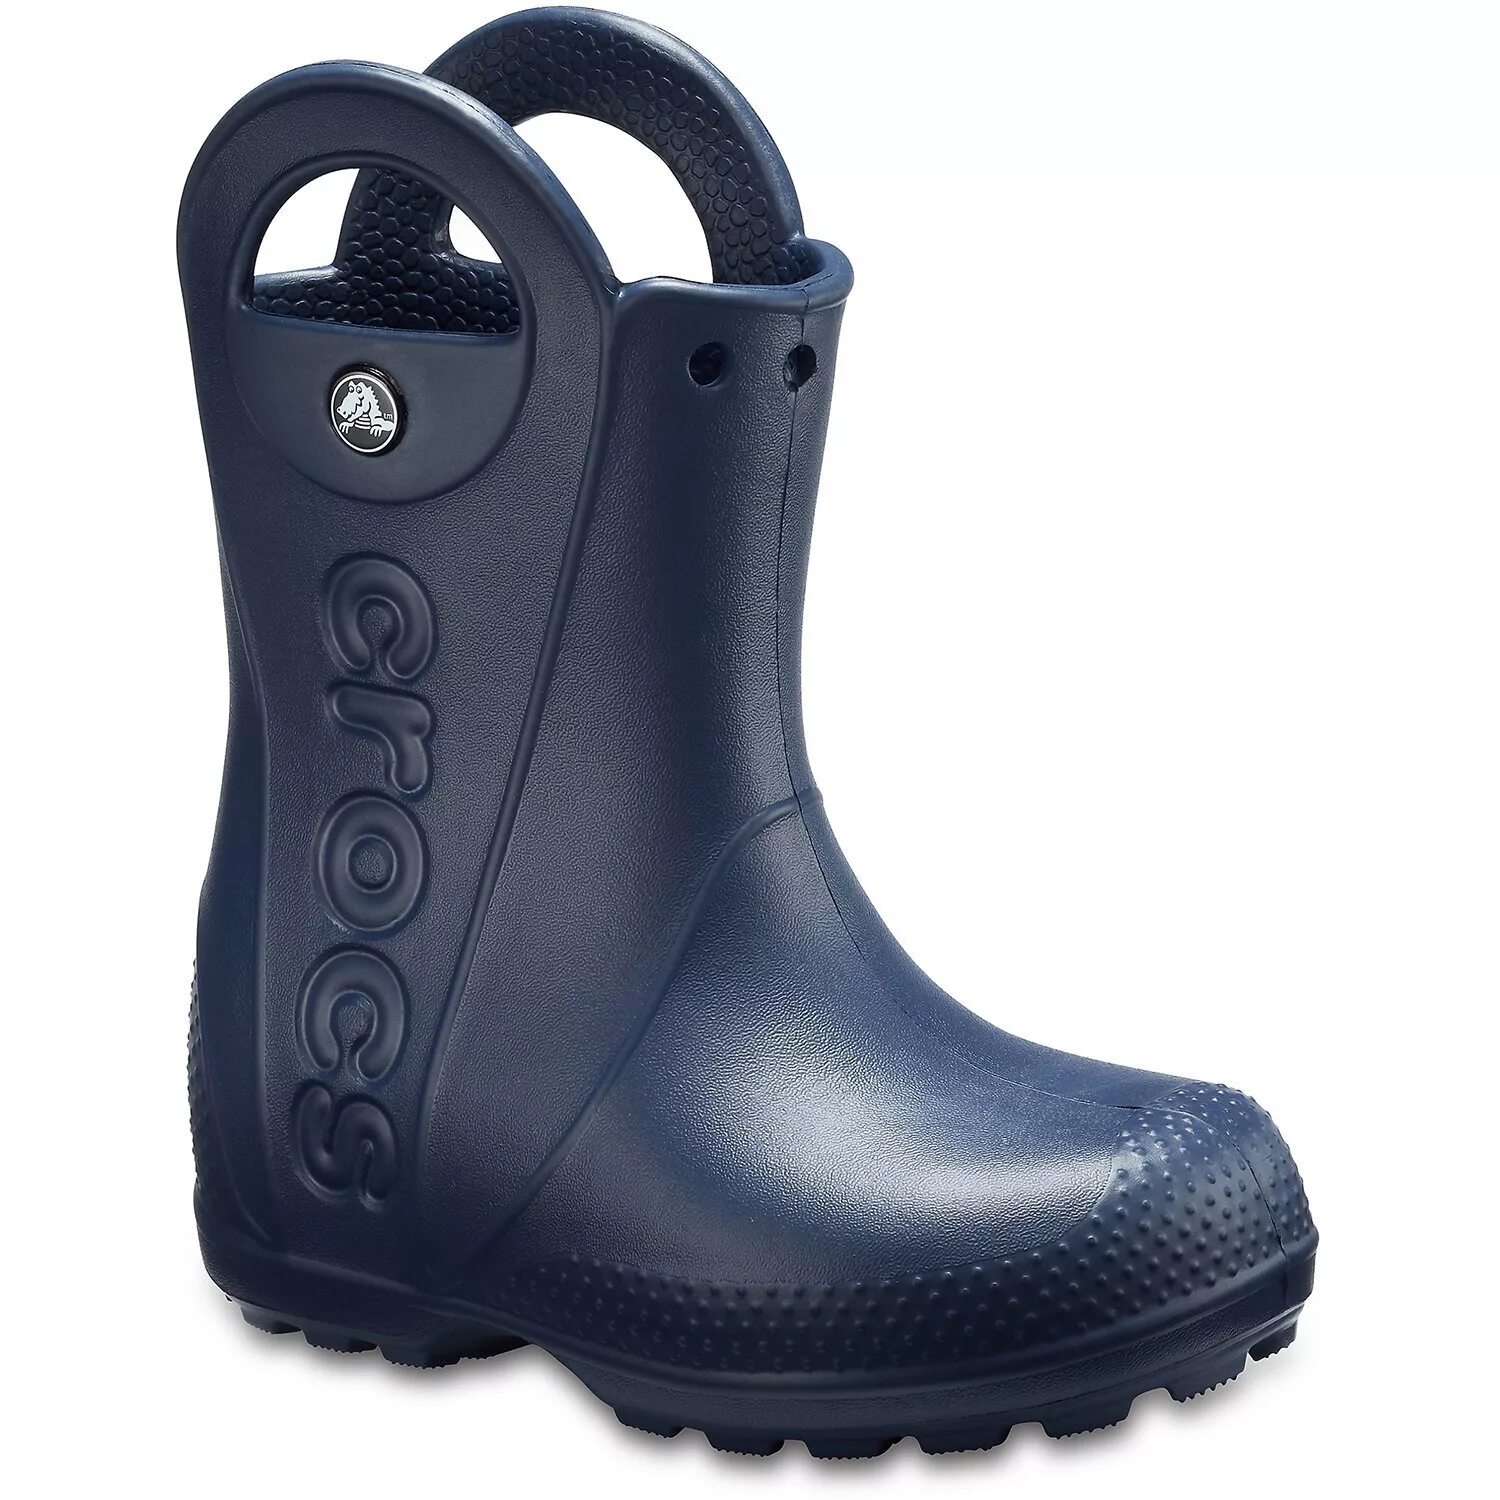 Резиновые сапоги Crocs Handle it Rain Boot. Сапоги резиновые Crocs Wellie Rain Boot. Crocs 12803 для детей сапоги. Сапоги Crocs Croslite. Сапоги кроксы мужские